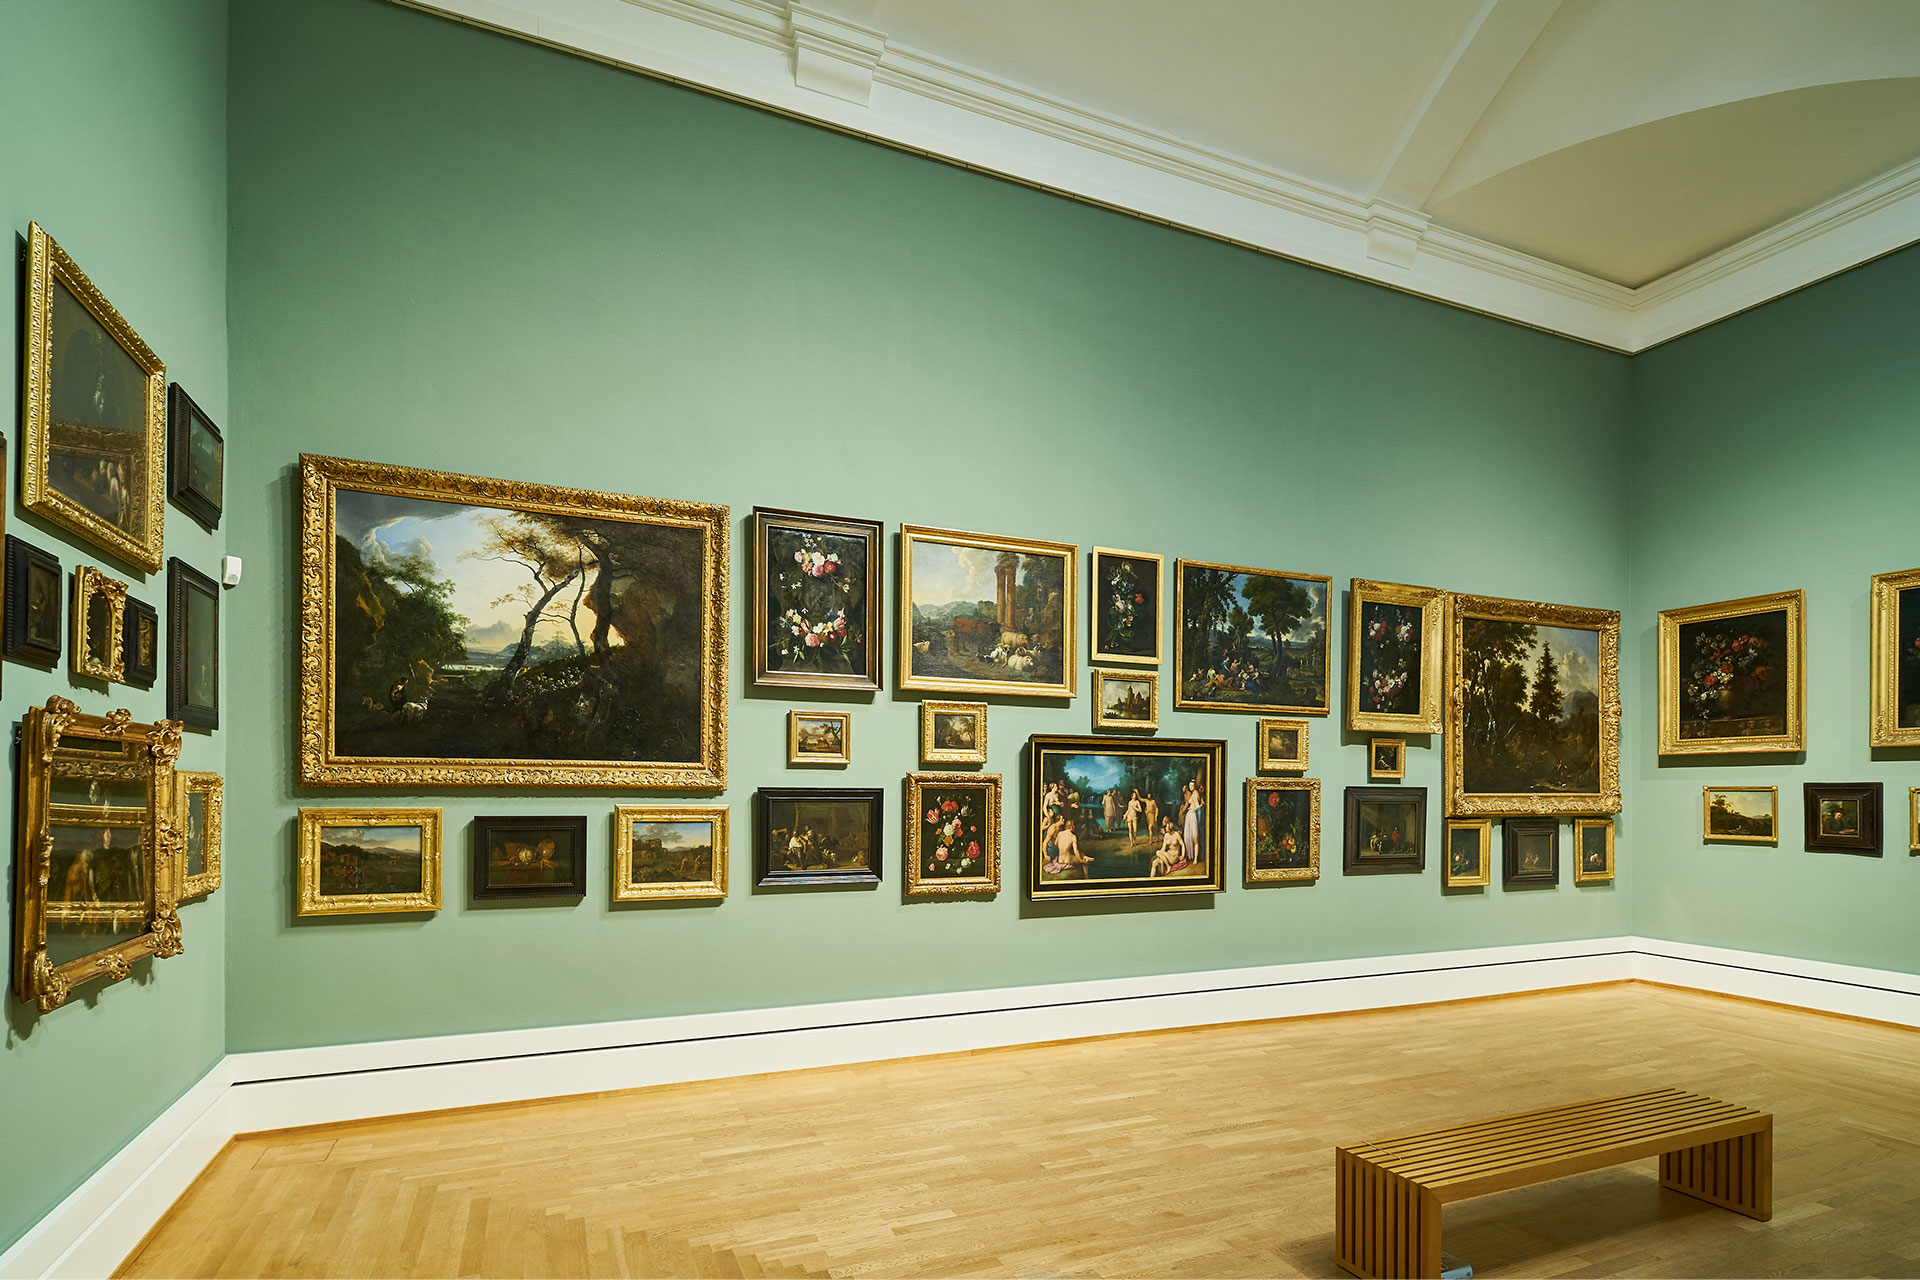 Das Bild zeigt einen Raum der Kunsthalle mit vielen Gemälden in einer Petersburger Hängung an der Wand.